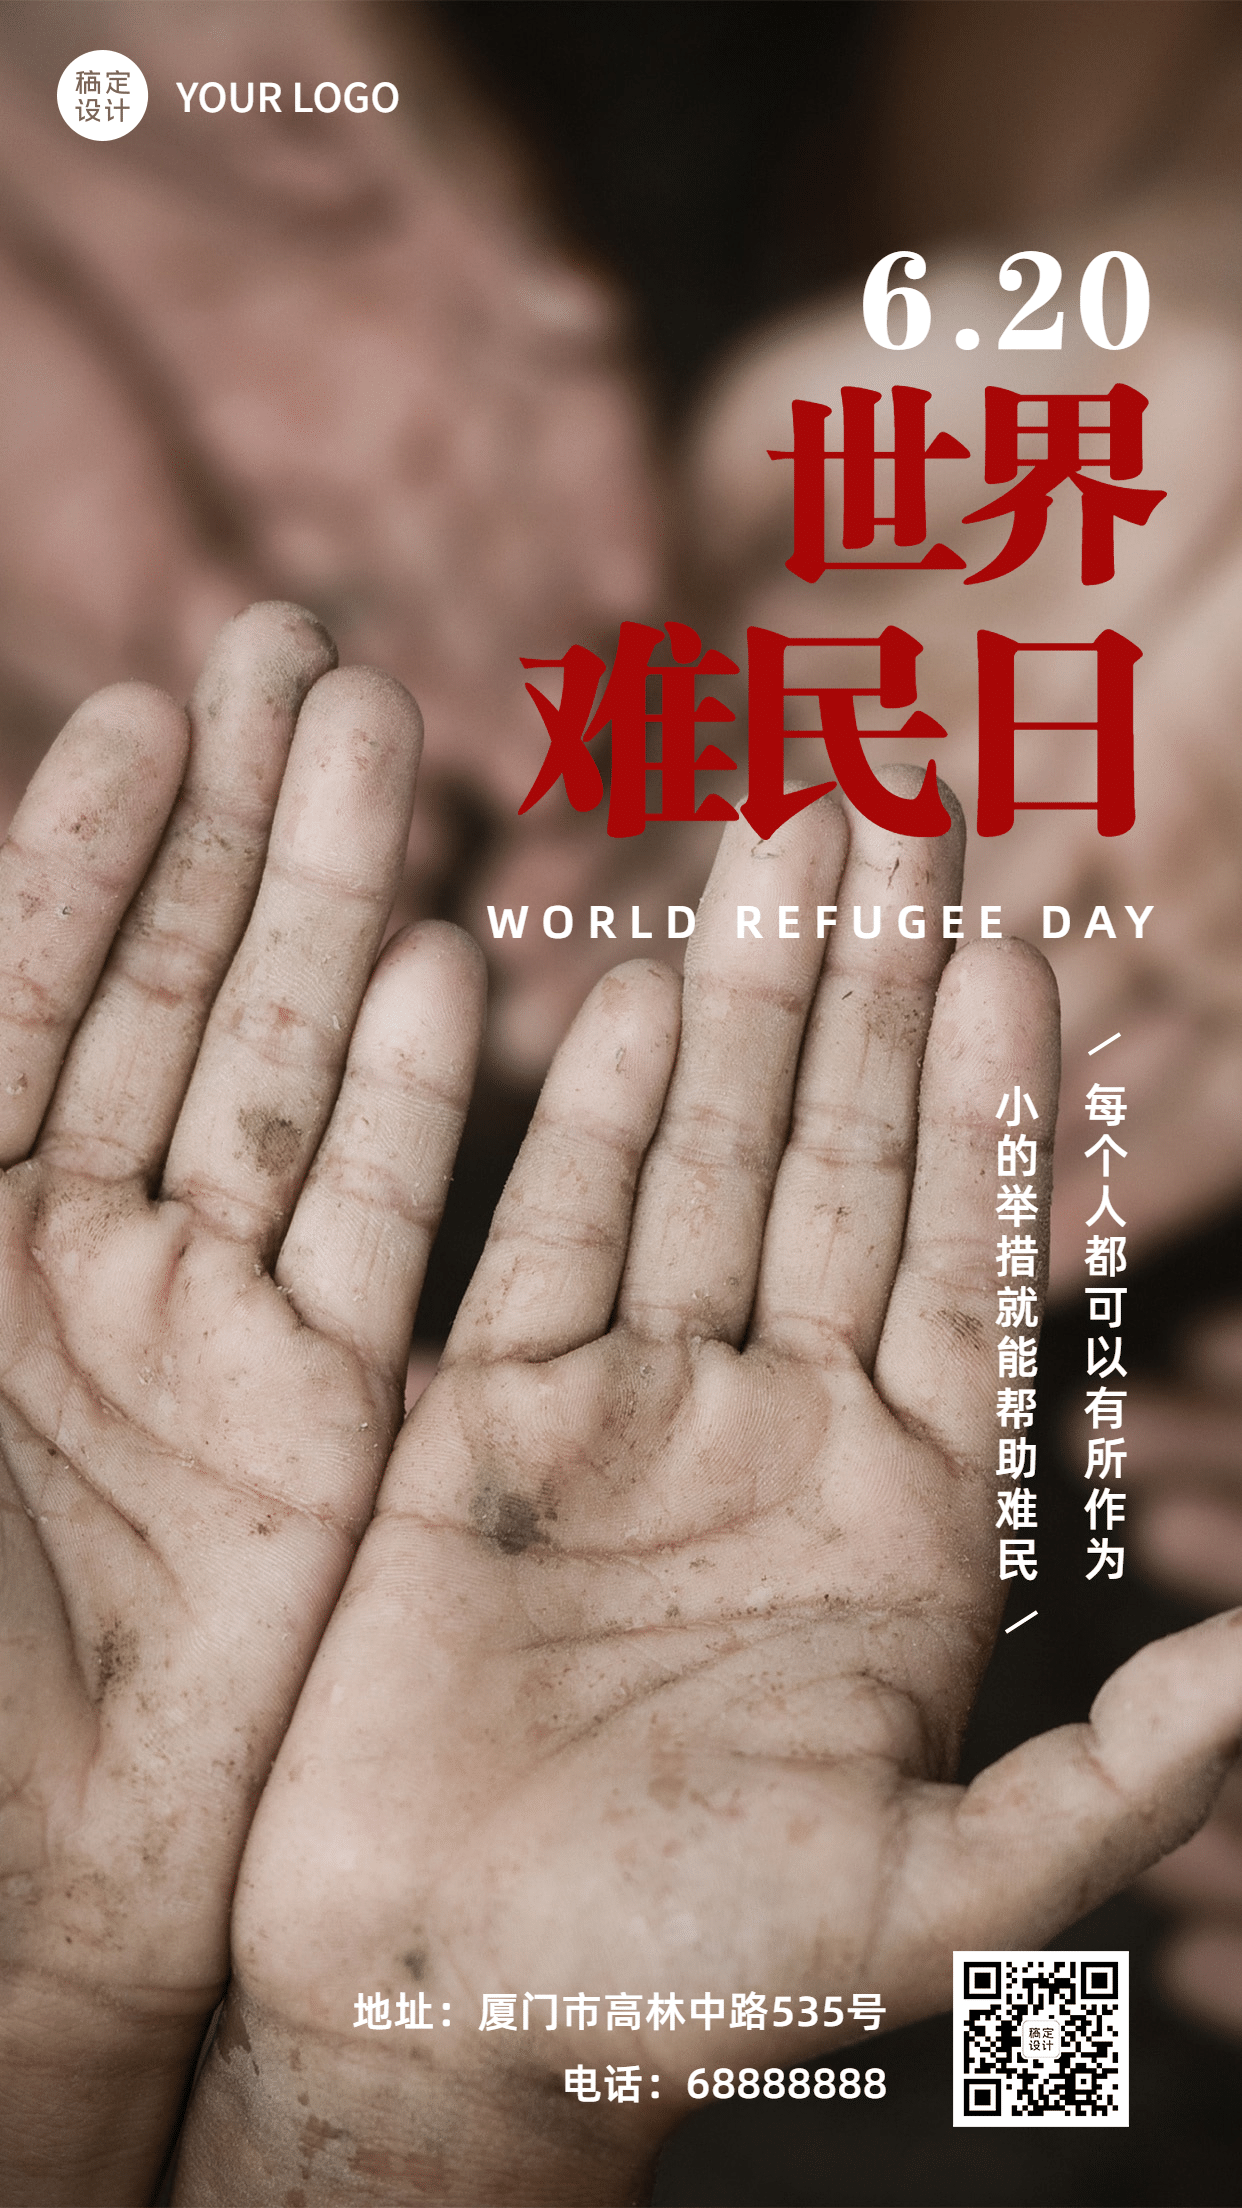 世界难民日爱心救助公益宣传实景手机海报预览效果